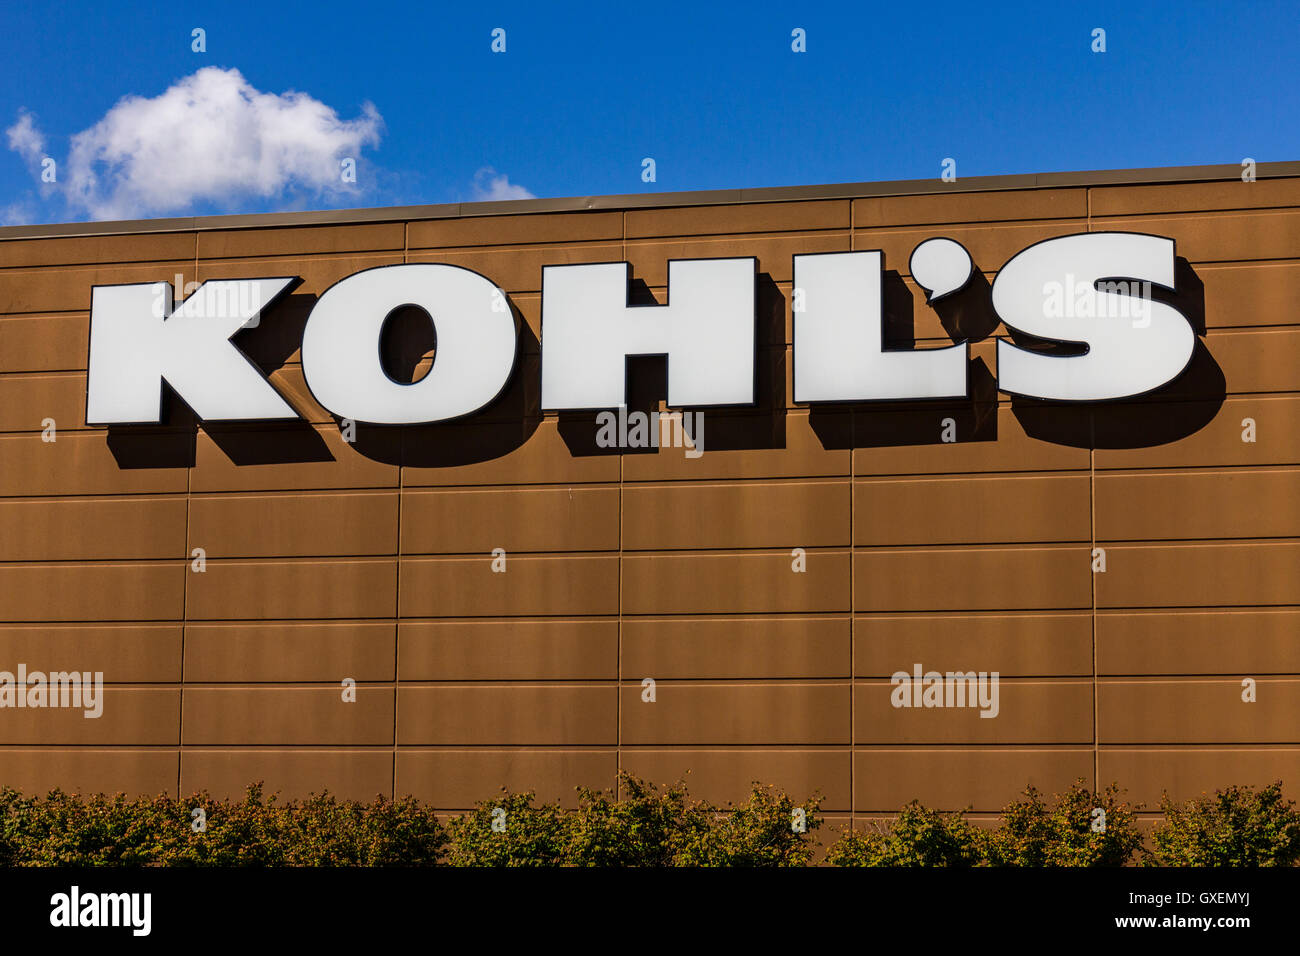 Muncie - Circa 30 Septembre 2016 : Kohl's Store. Kohl's exploite plus de 1 100 magasins discount V Banque D'Images